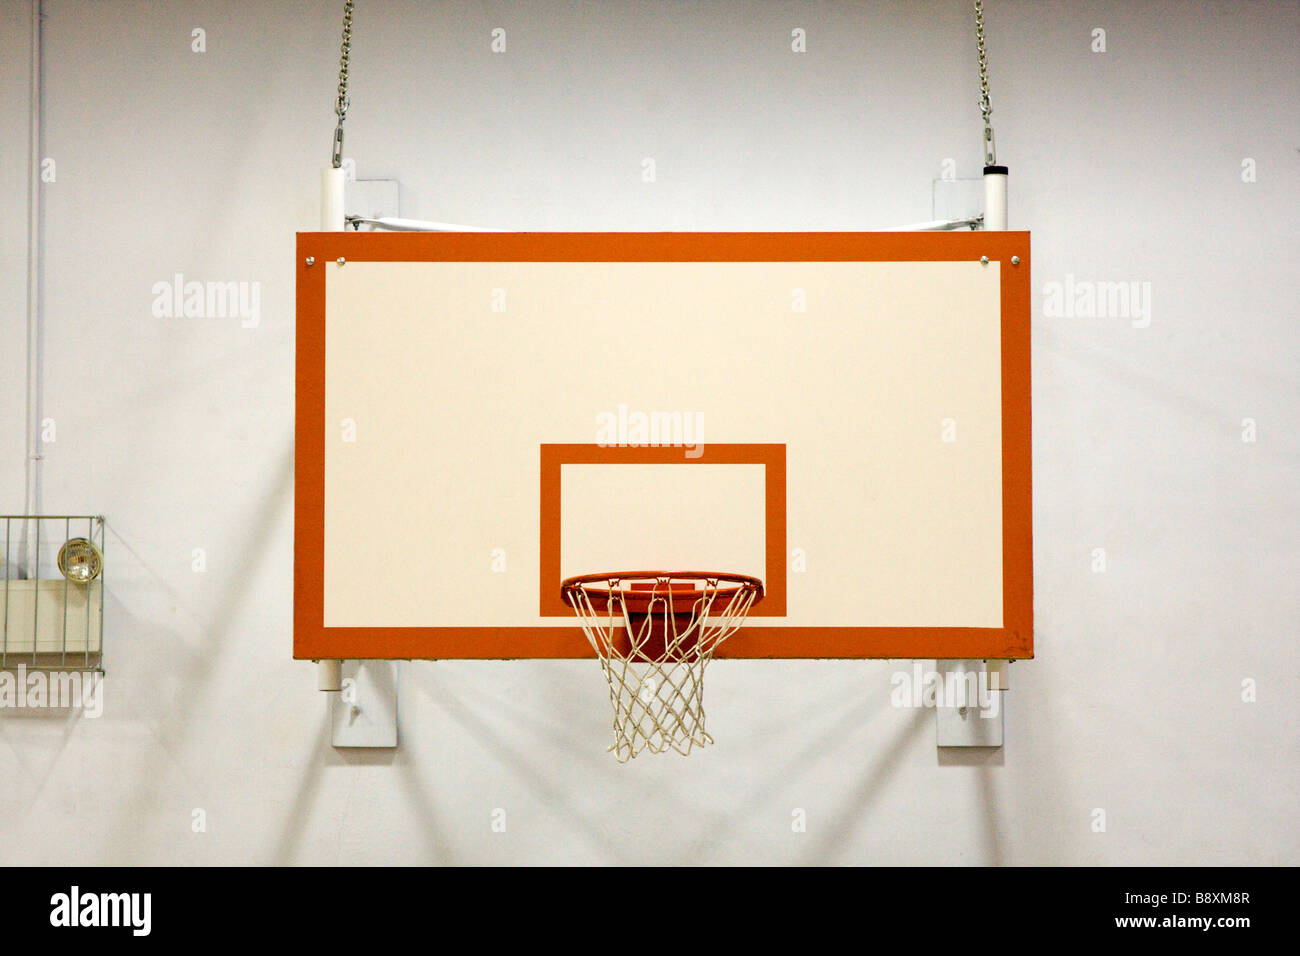 Indoor Basketball Hoop in School Gymnasium Stock Photo